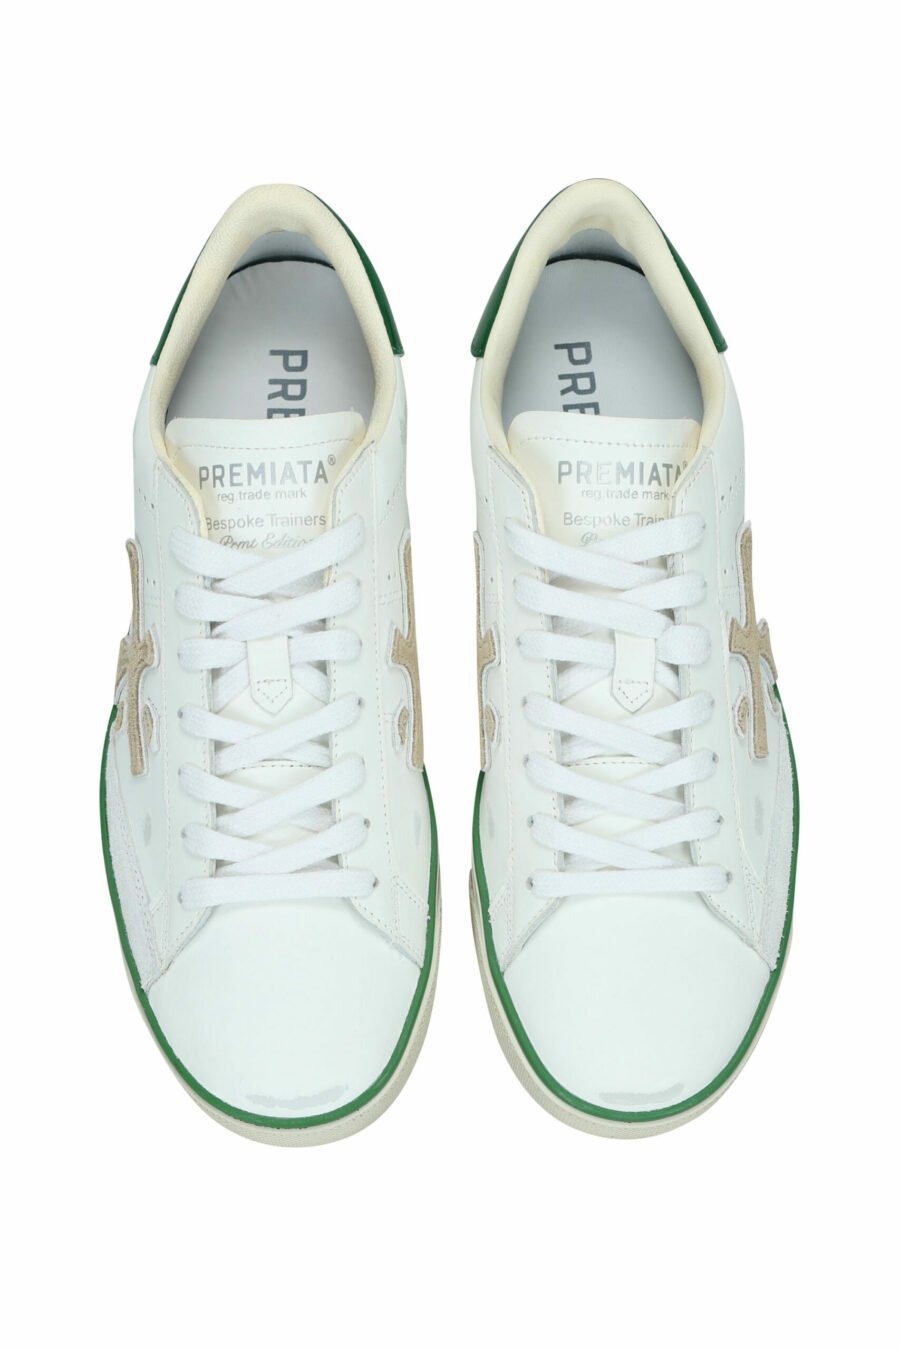 Chaussures blanches portées avec la mention verte "Steven 6645" - 8053680394497 4 échelles